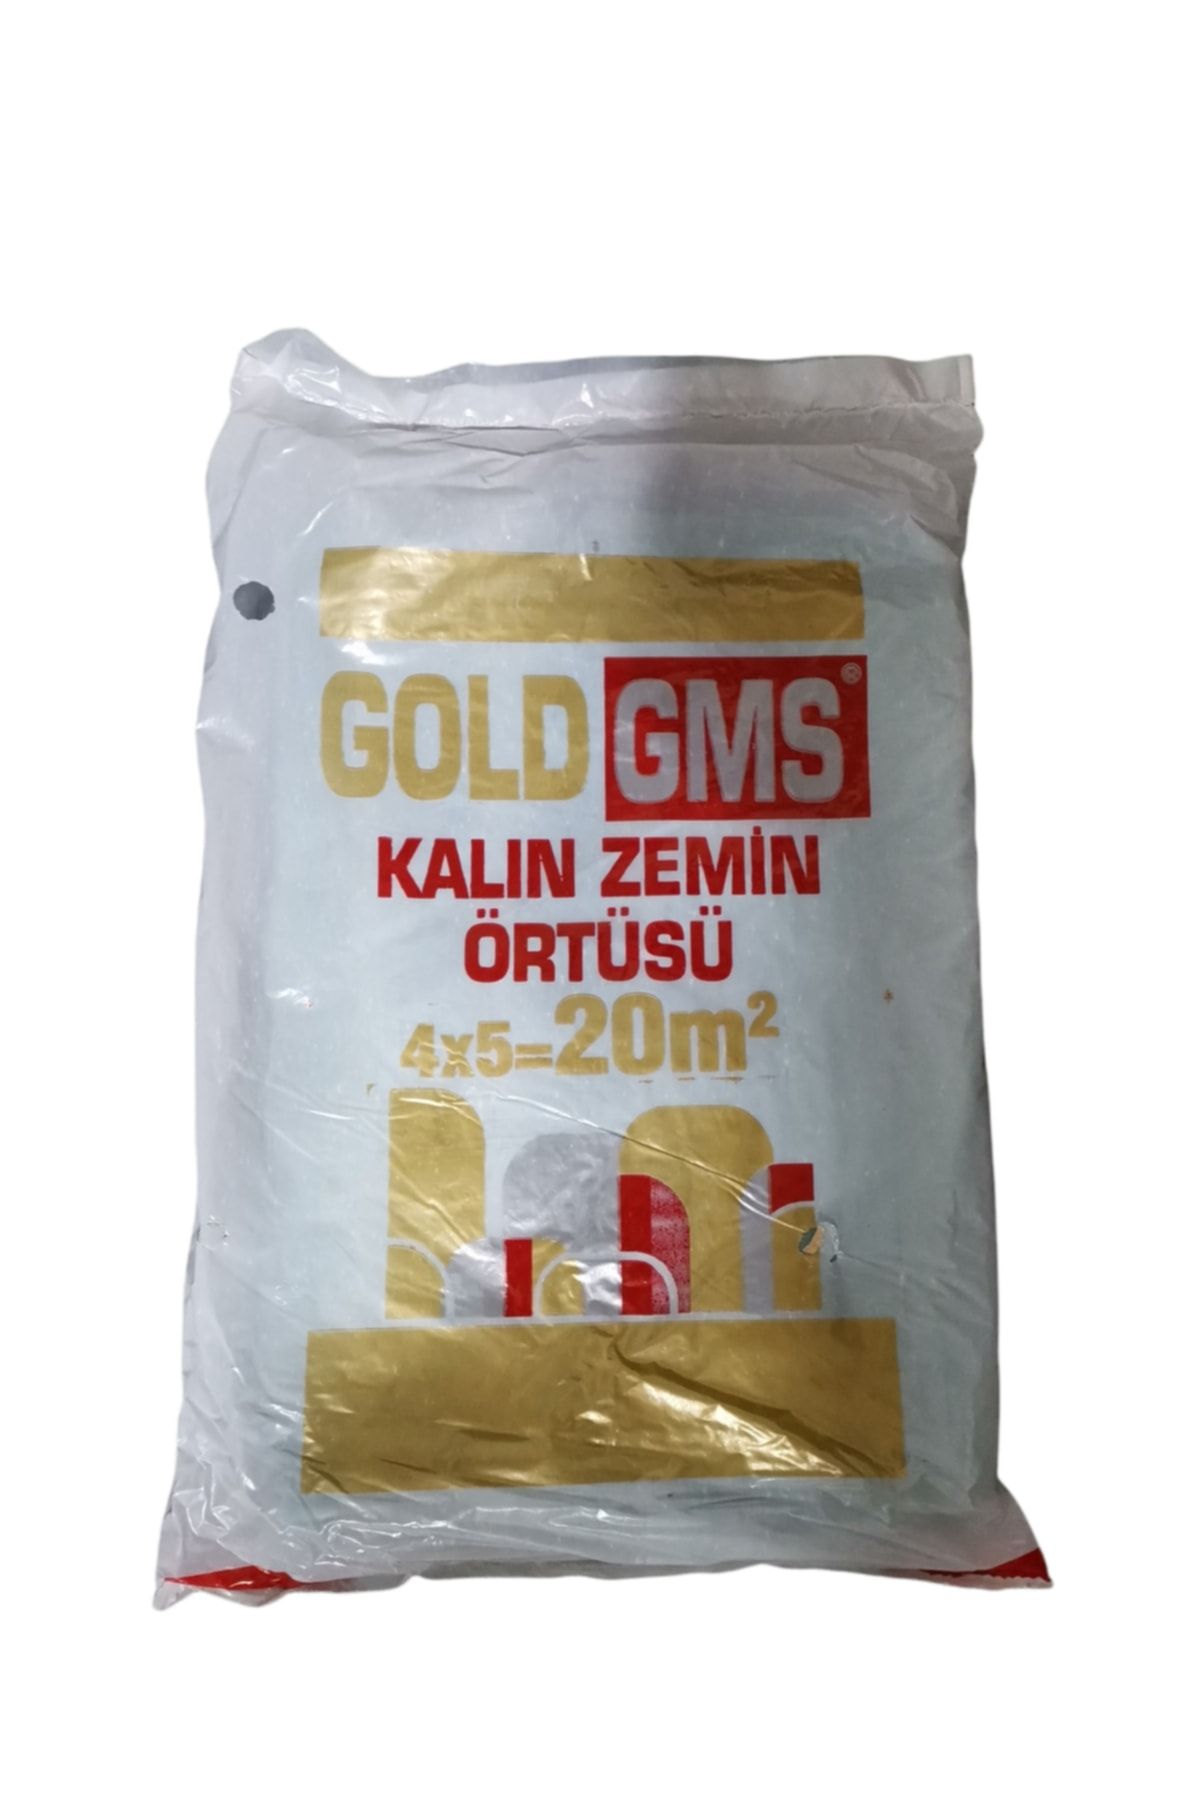 Gms Gold Boya Badana Örtüsü Koruyucu Kalın Zemin Örtüsü 50 M2 ( 4 X 12,5 M.)